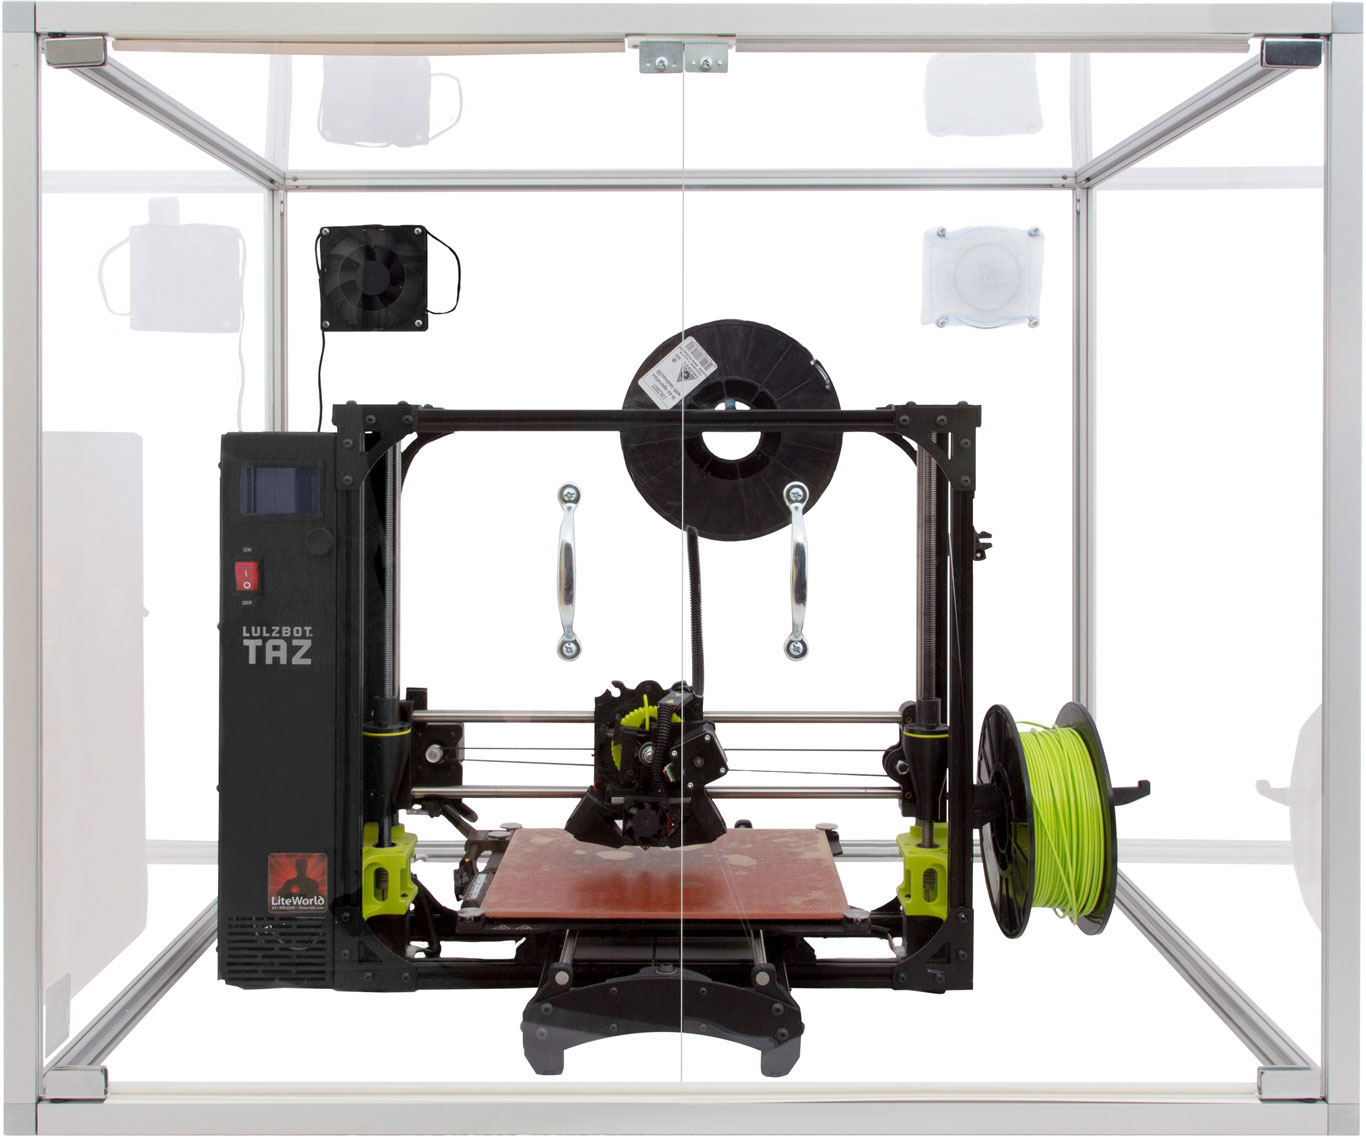 3D Printer Enclosure with Luzbot Printer